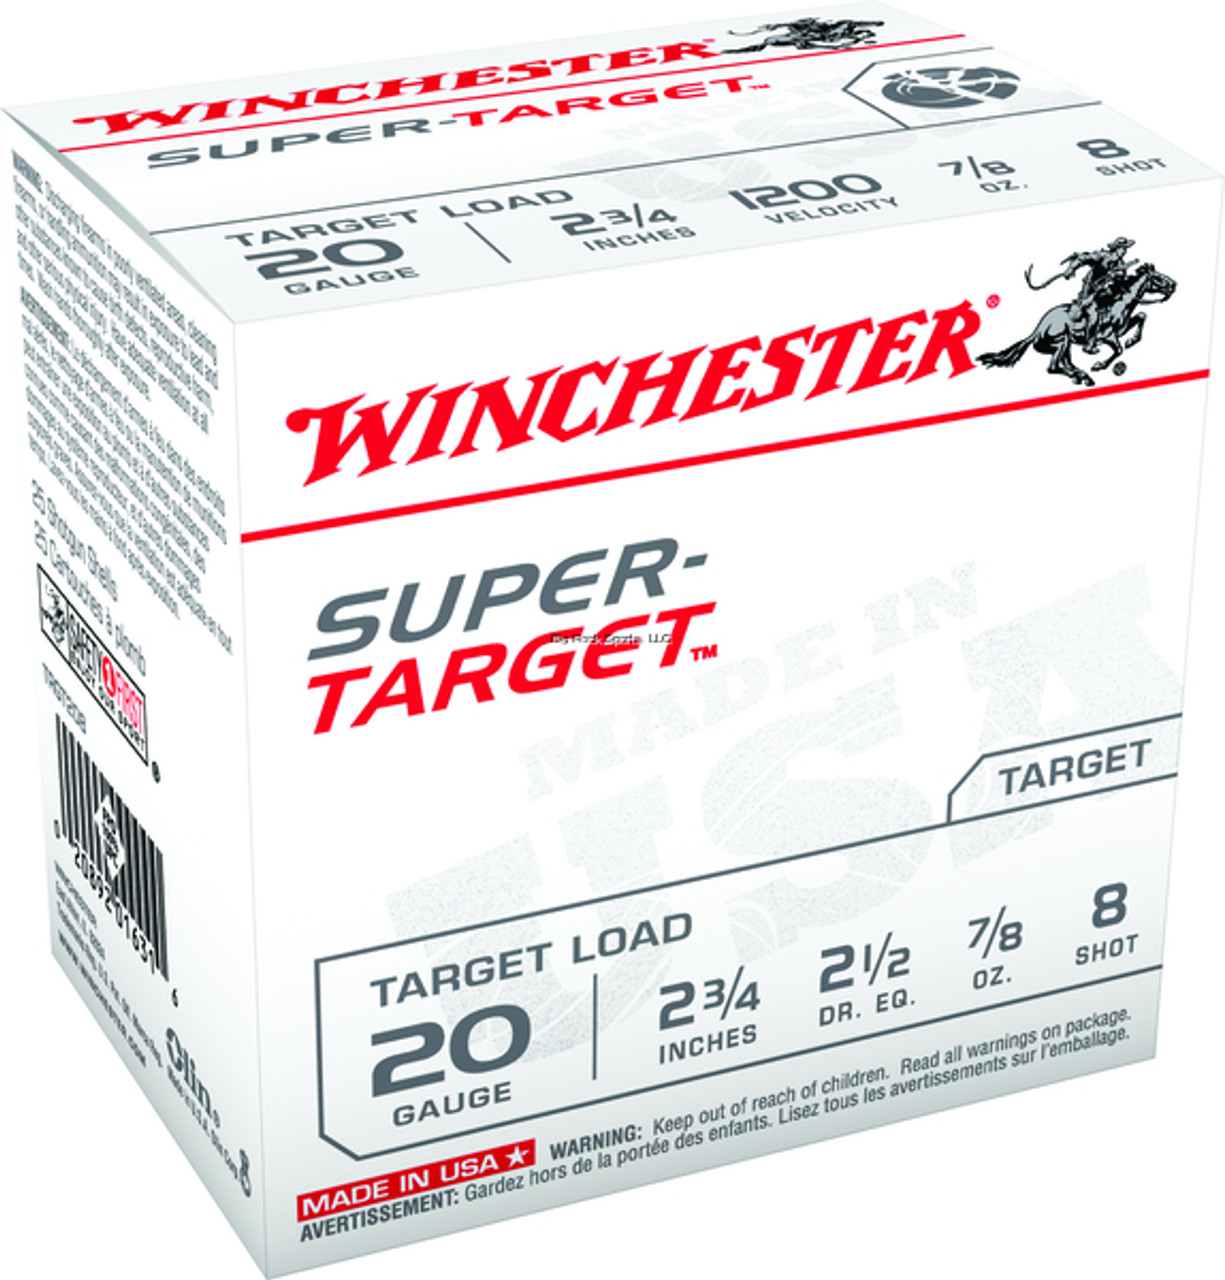 Winchester Super-Target Shotshell 20 GA, 2-3/4 in, No. 8 Shot, 7/8oz, 2-1/2 Dr, 1200 fps, 25 Rnds